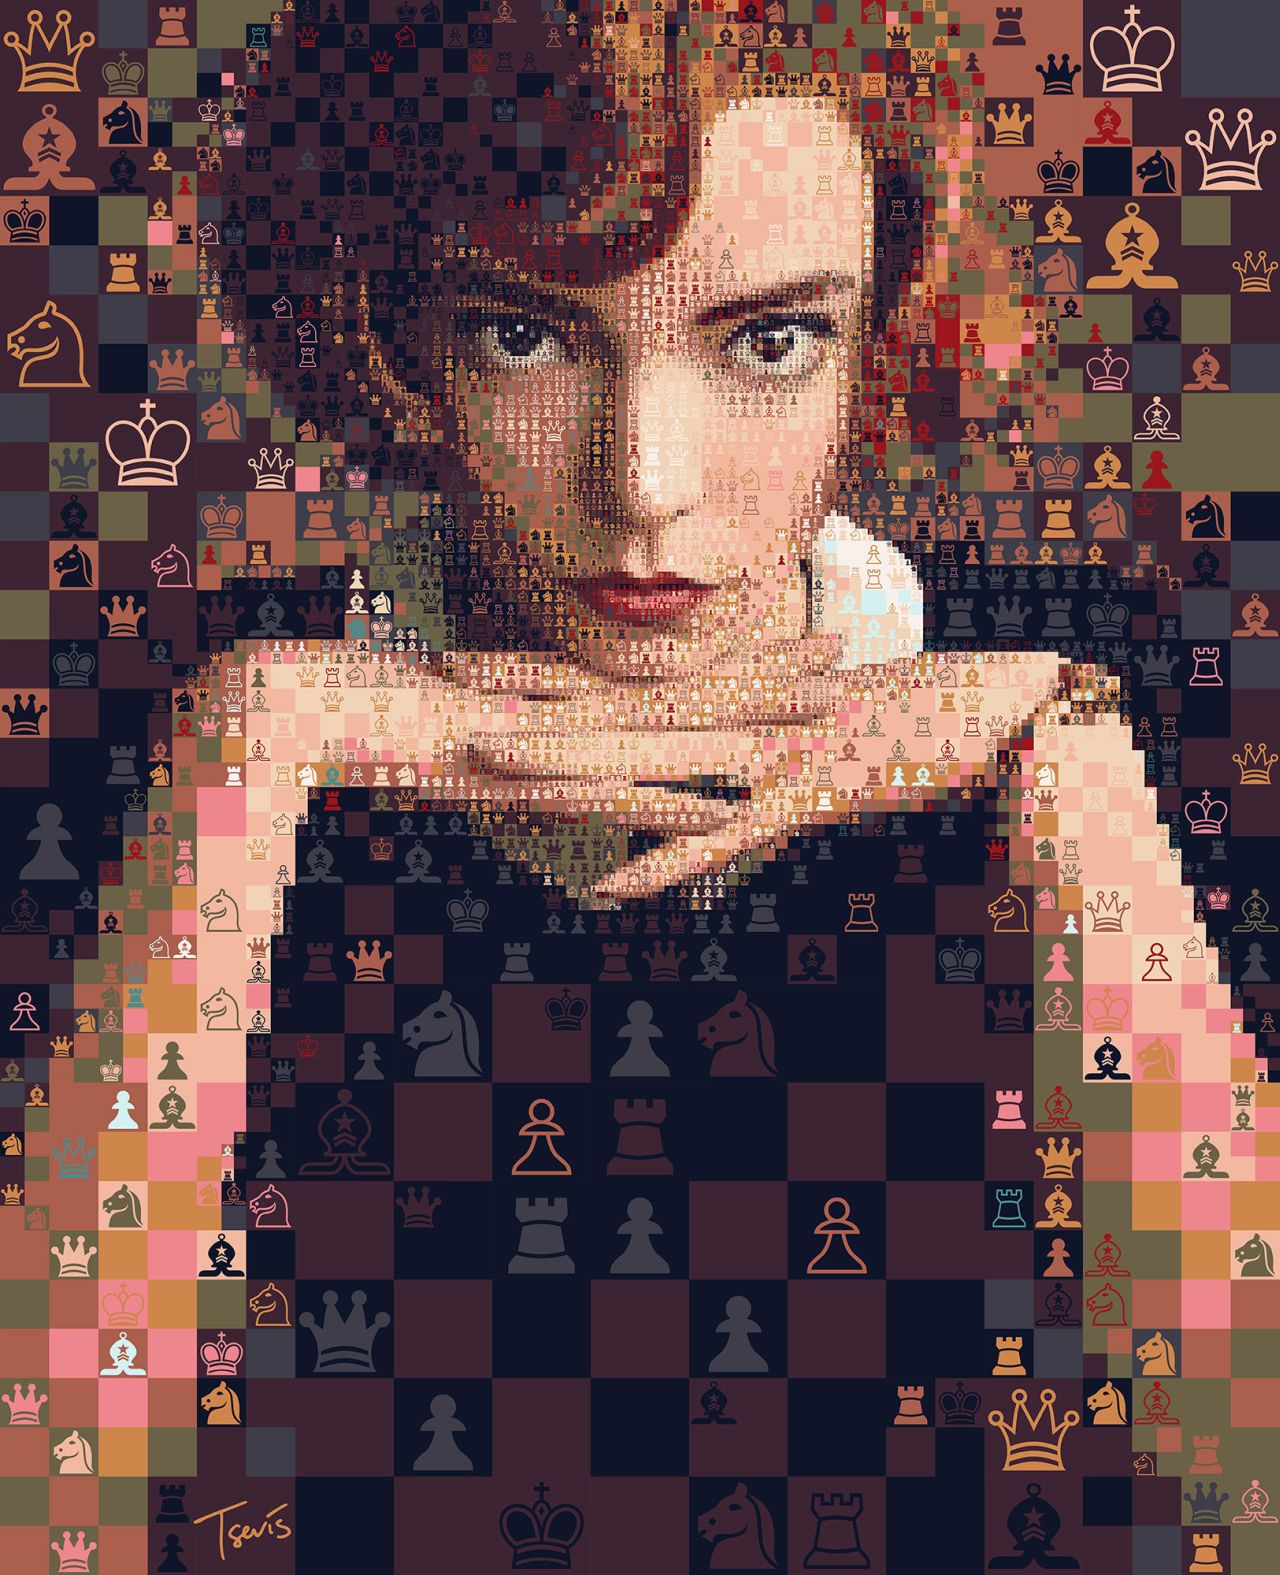 portrait photo mosaic art queen gambit